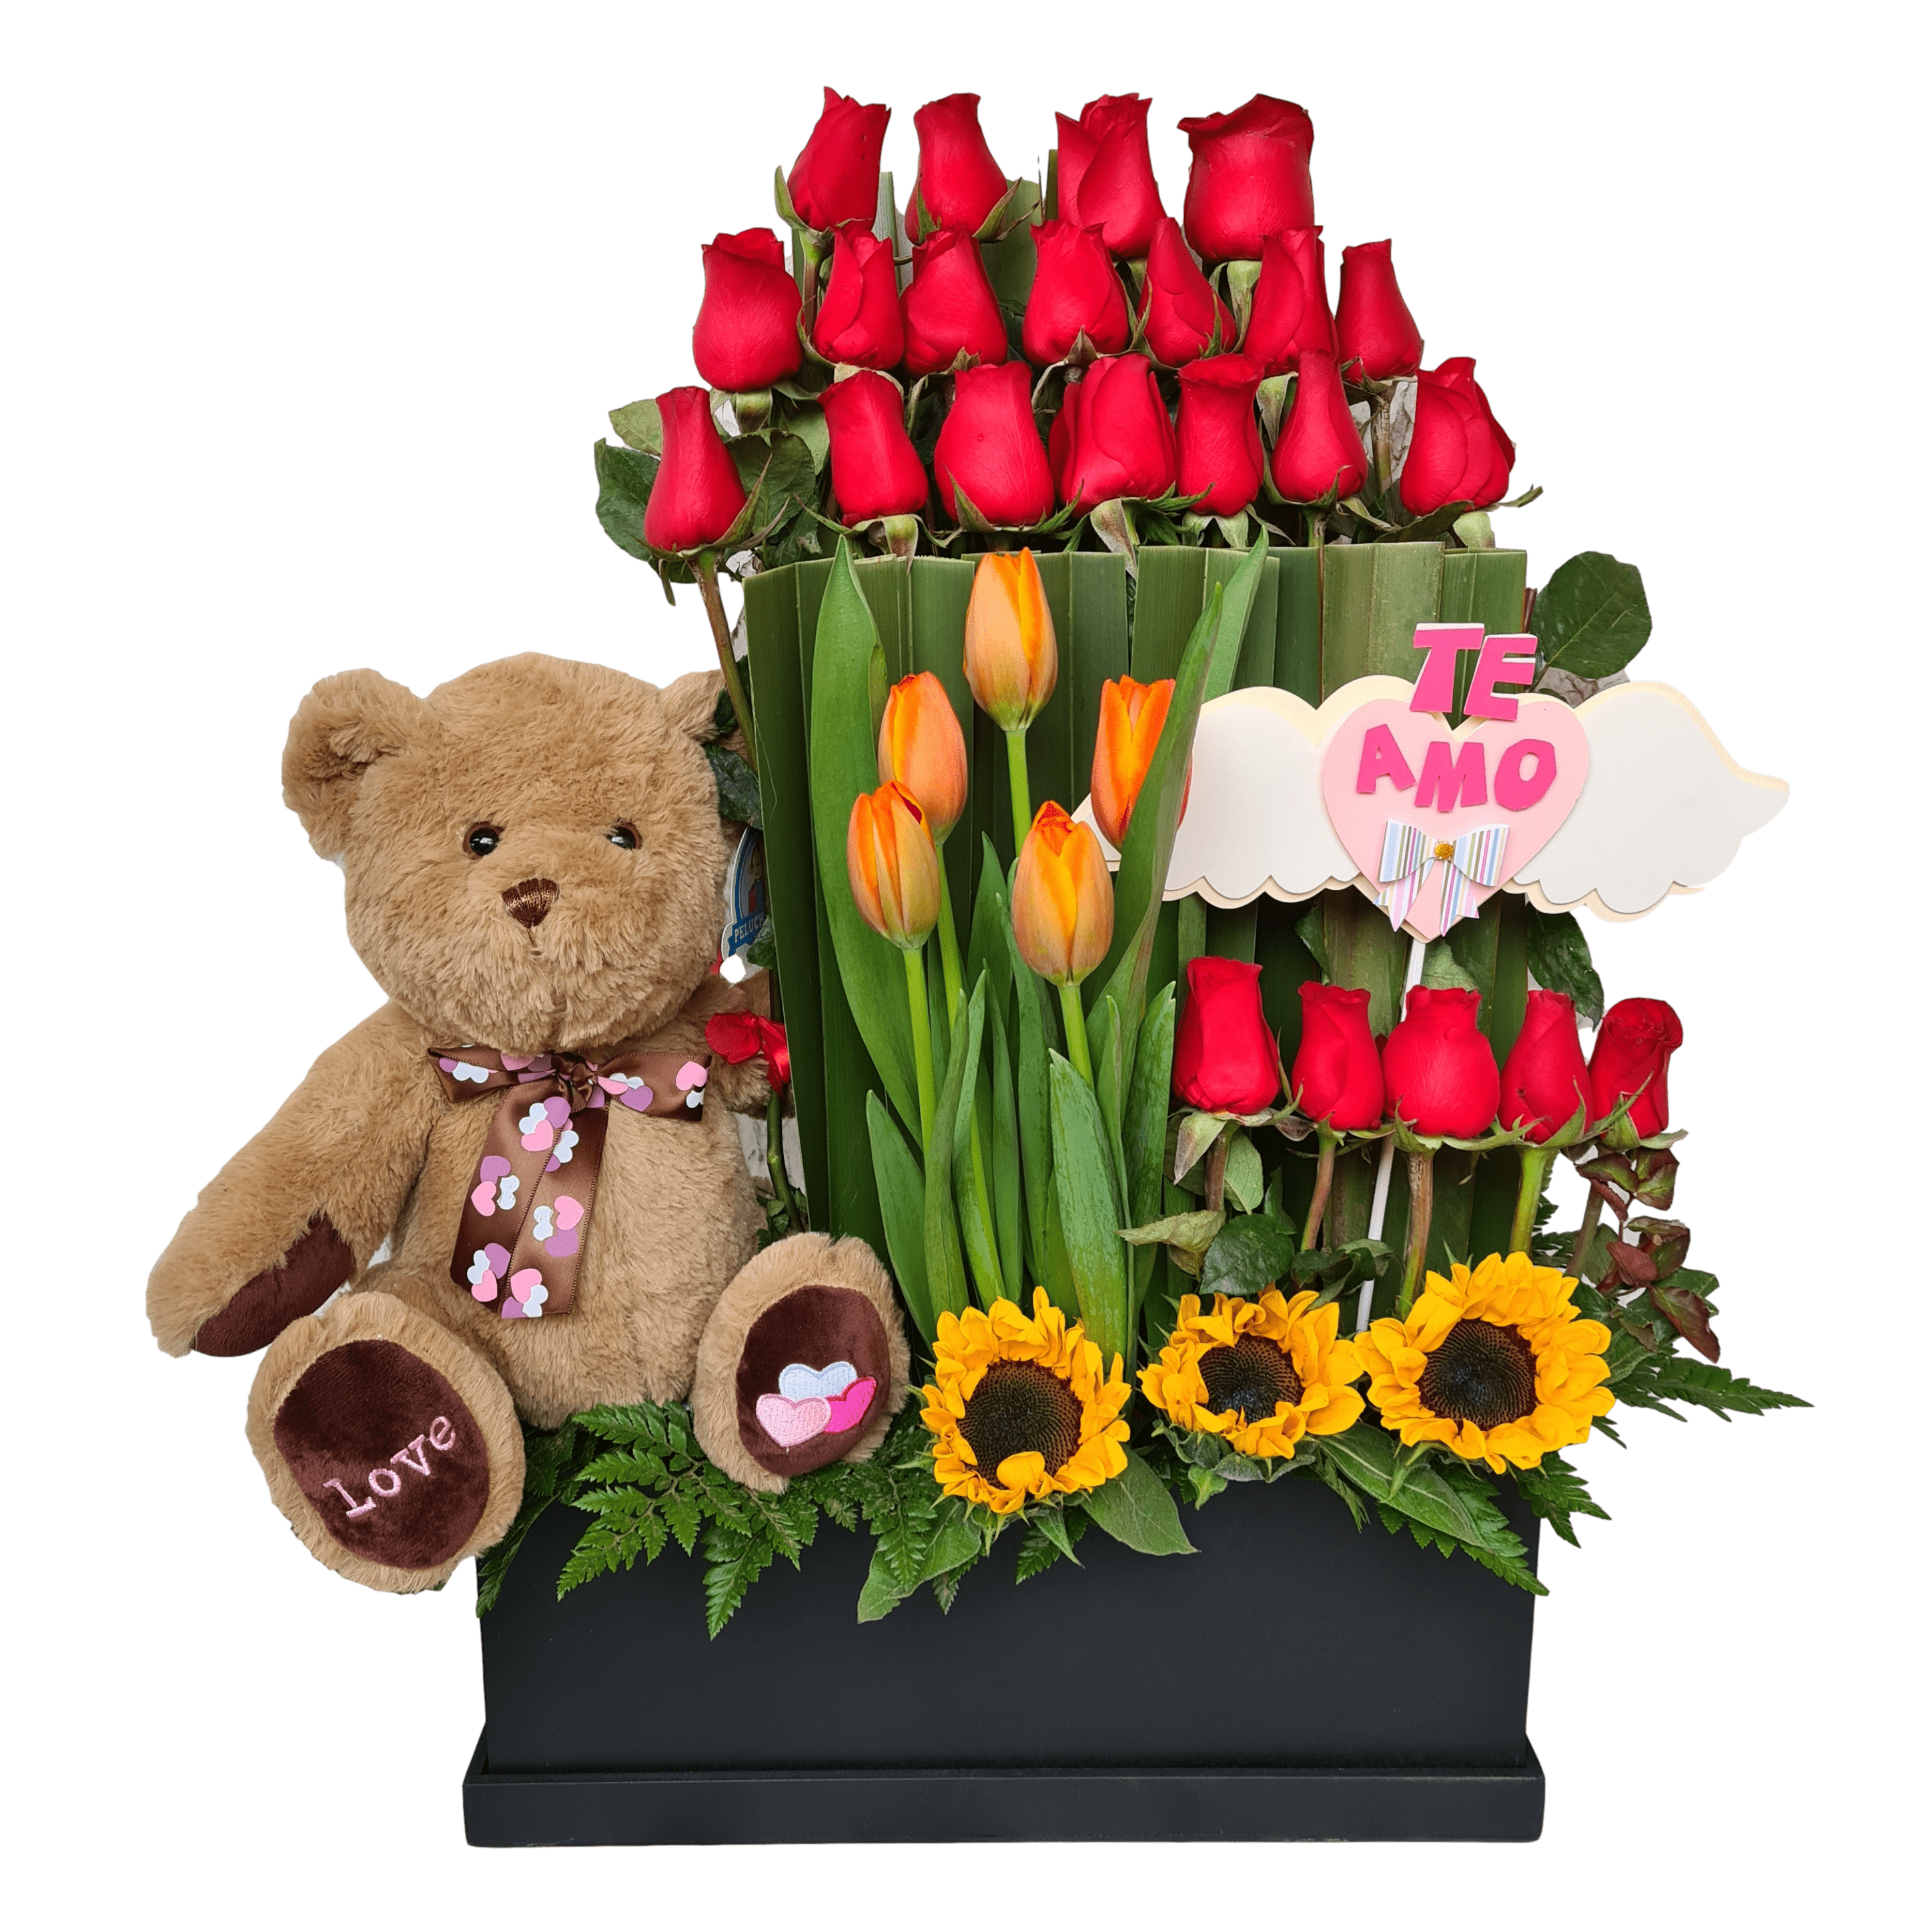 Details 100 picture arreglos con tulipanes y rosas